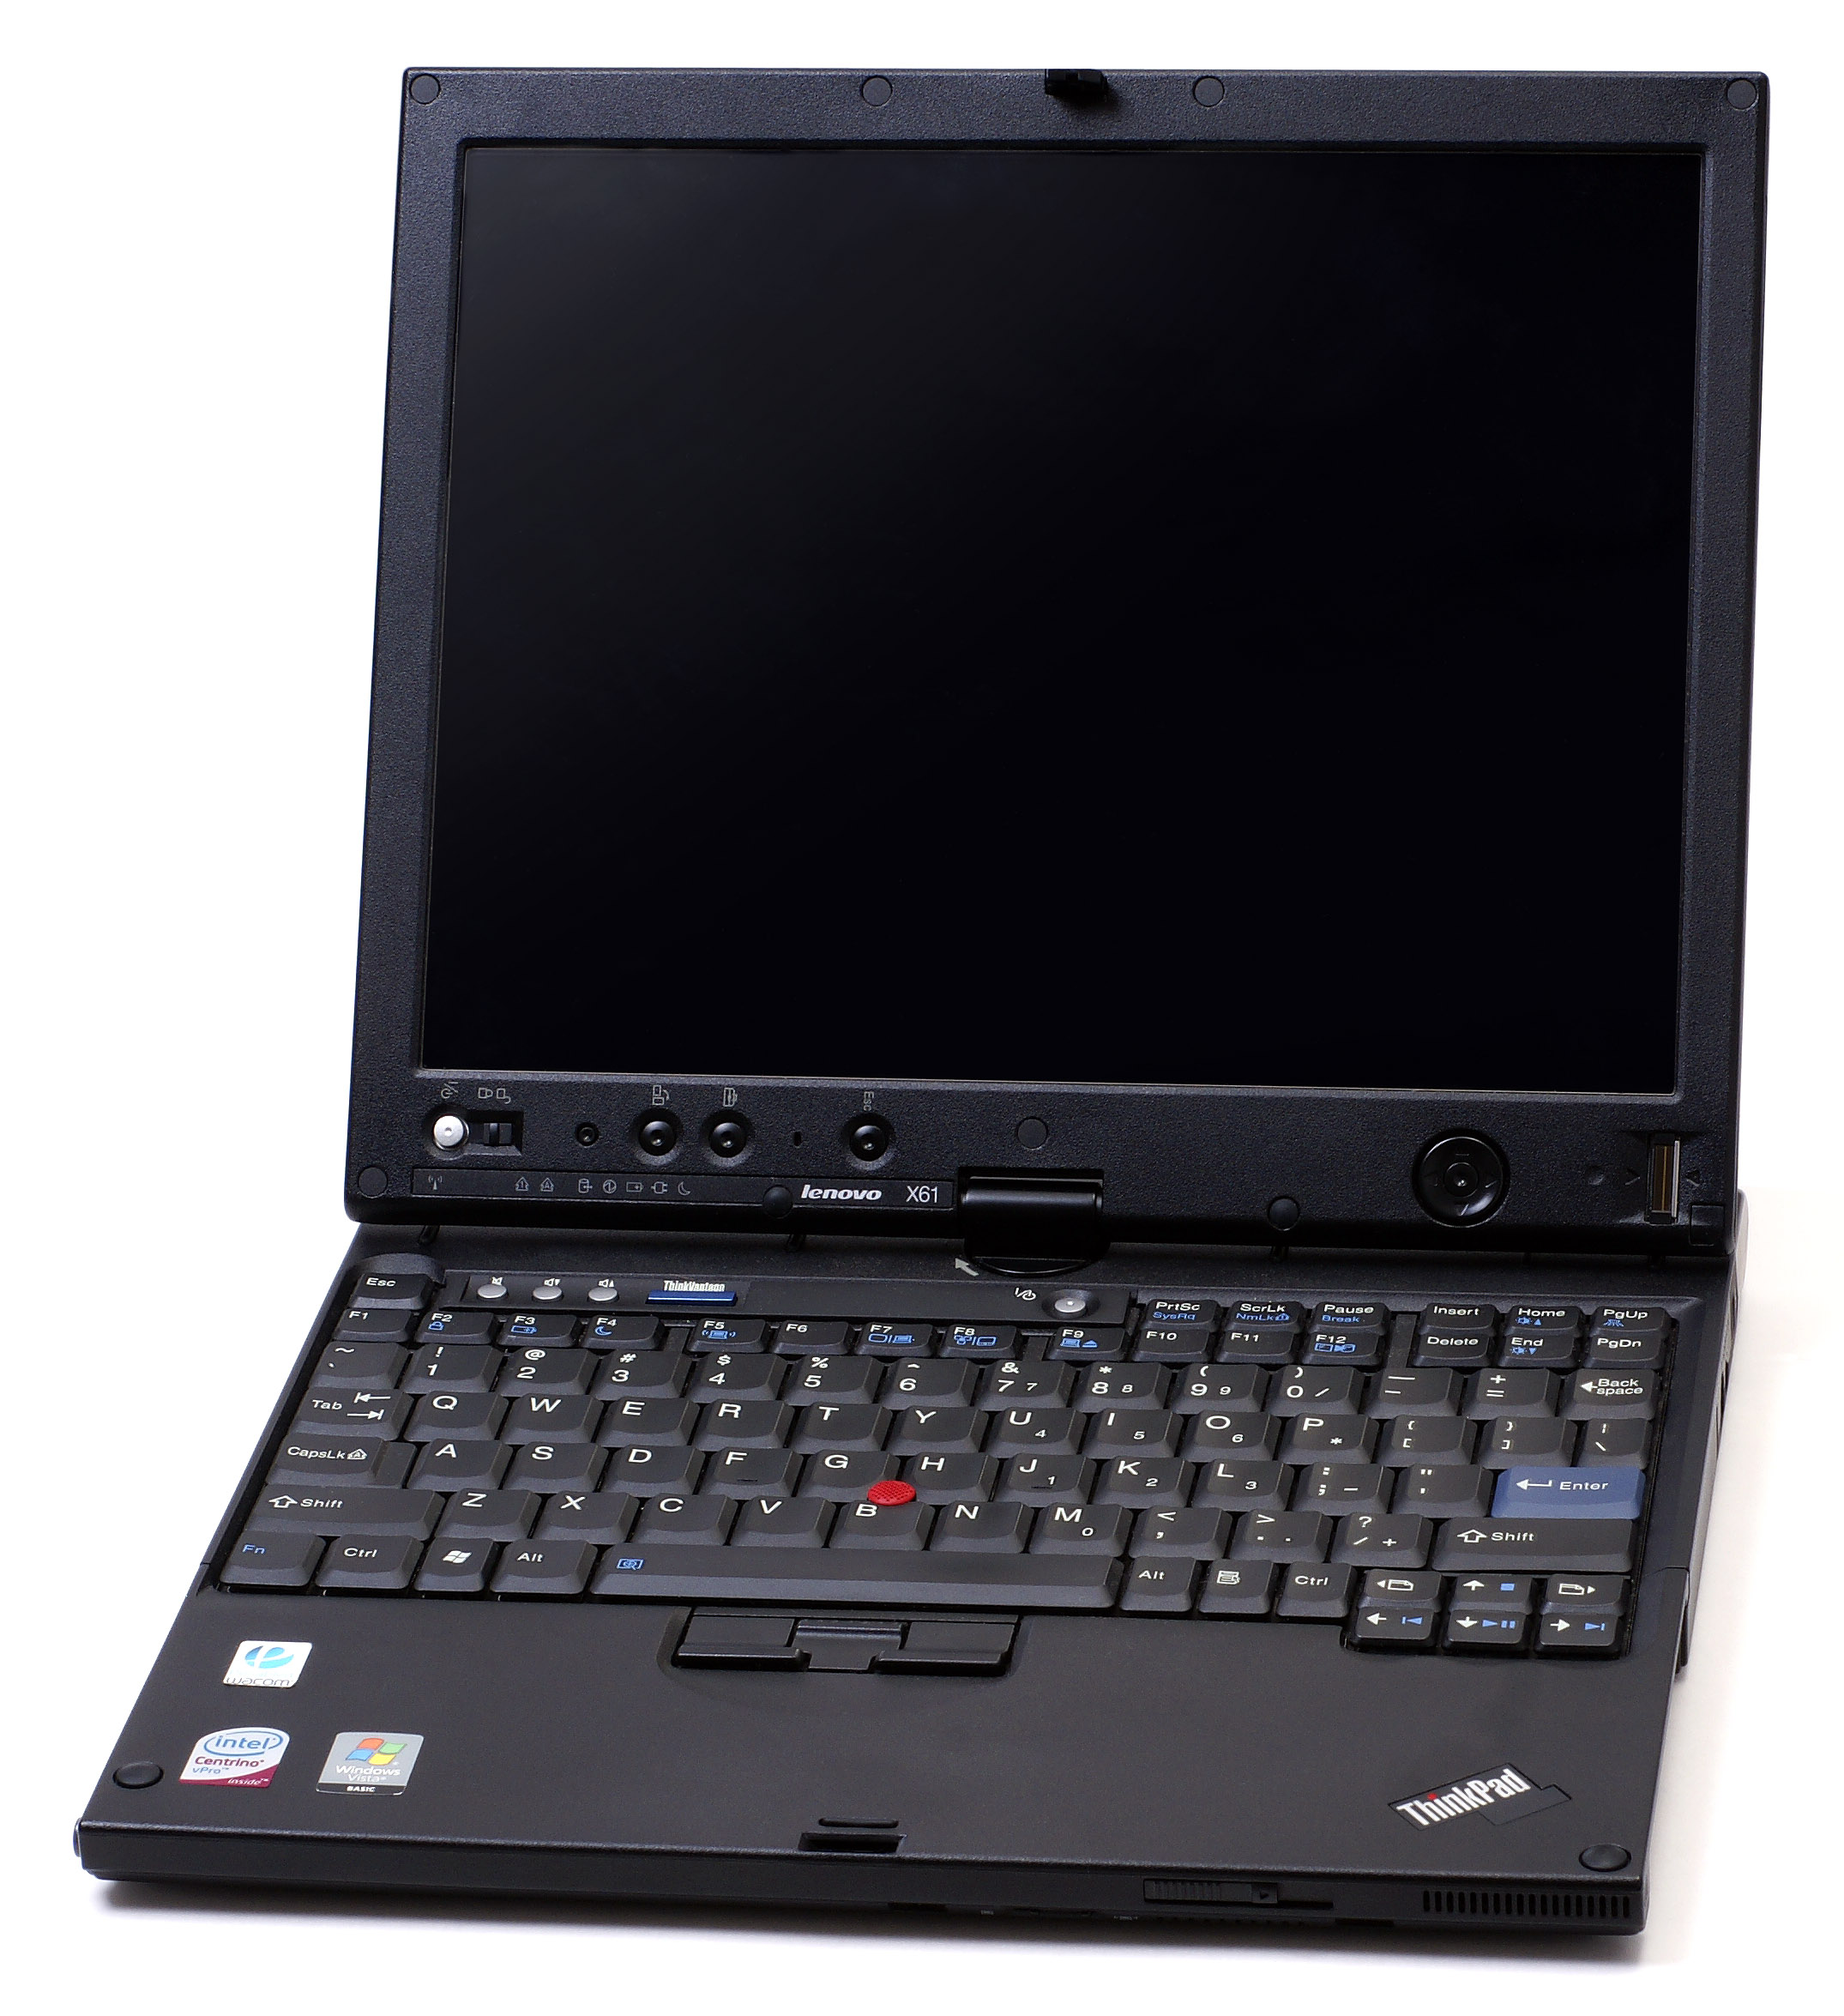 File:ThinkPad X61 Tablet.jpg - Wikipedia